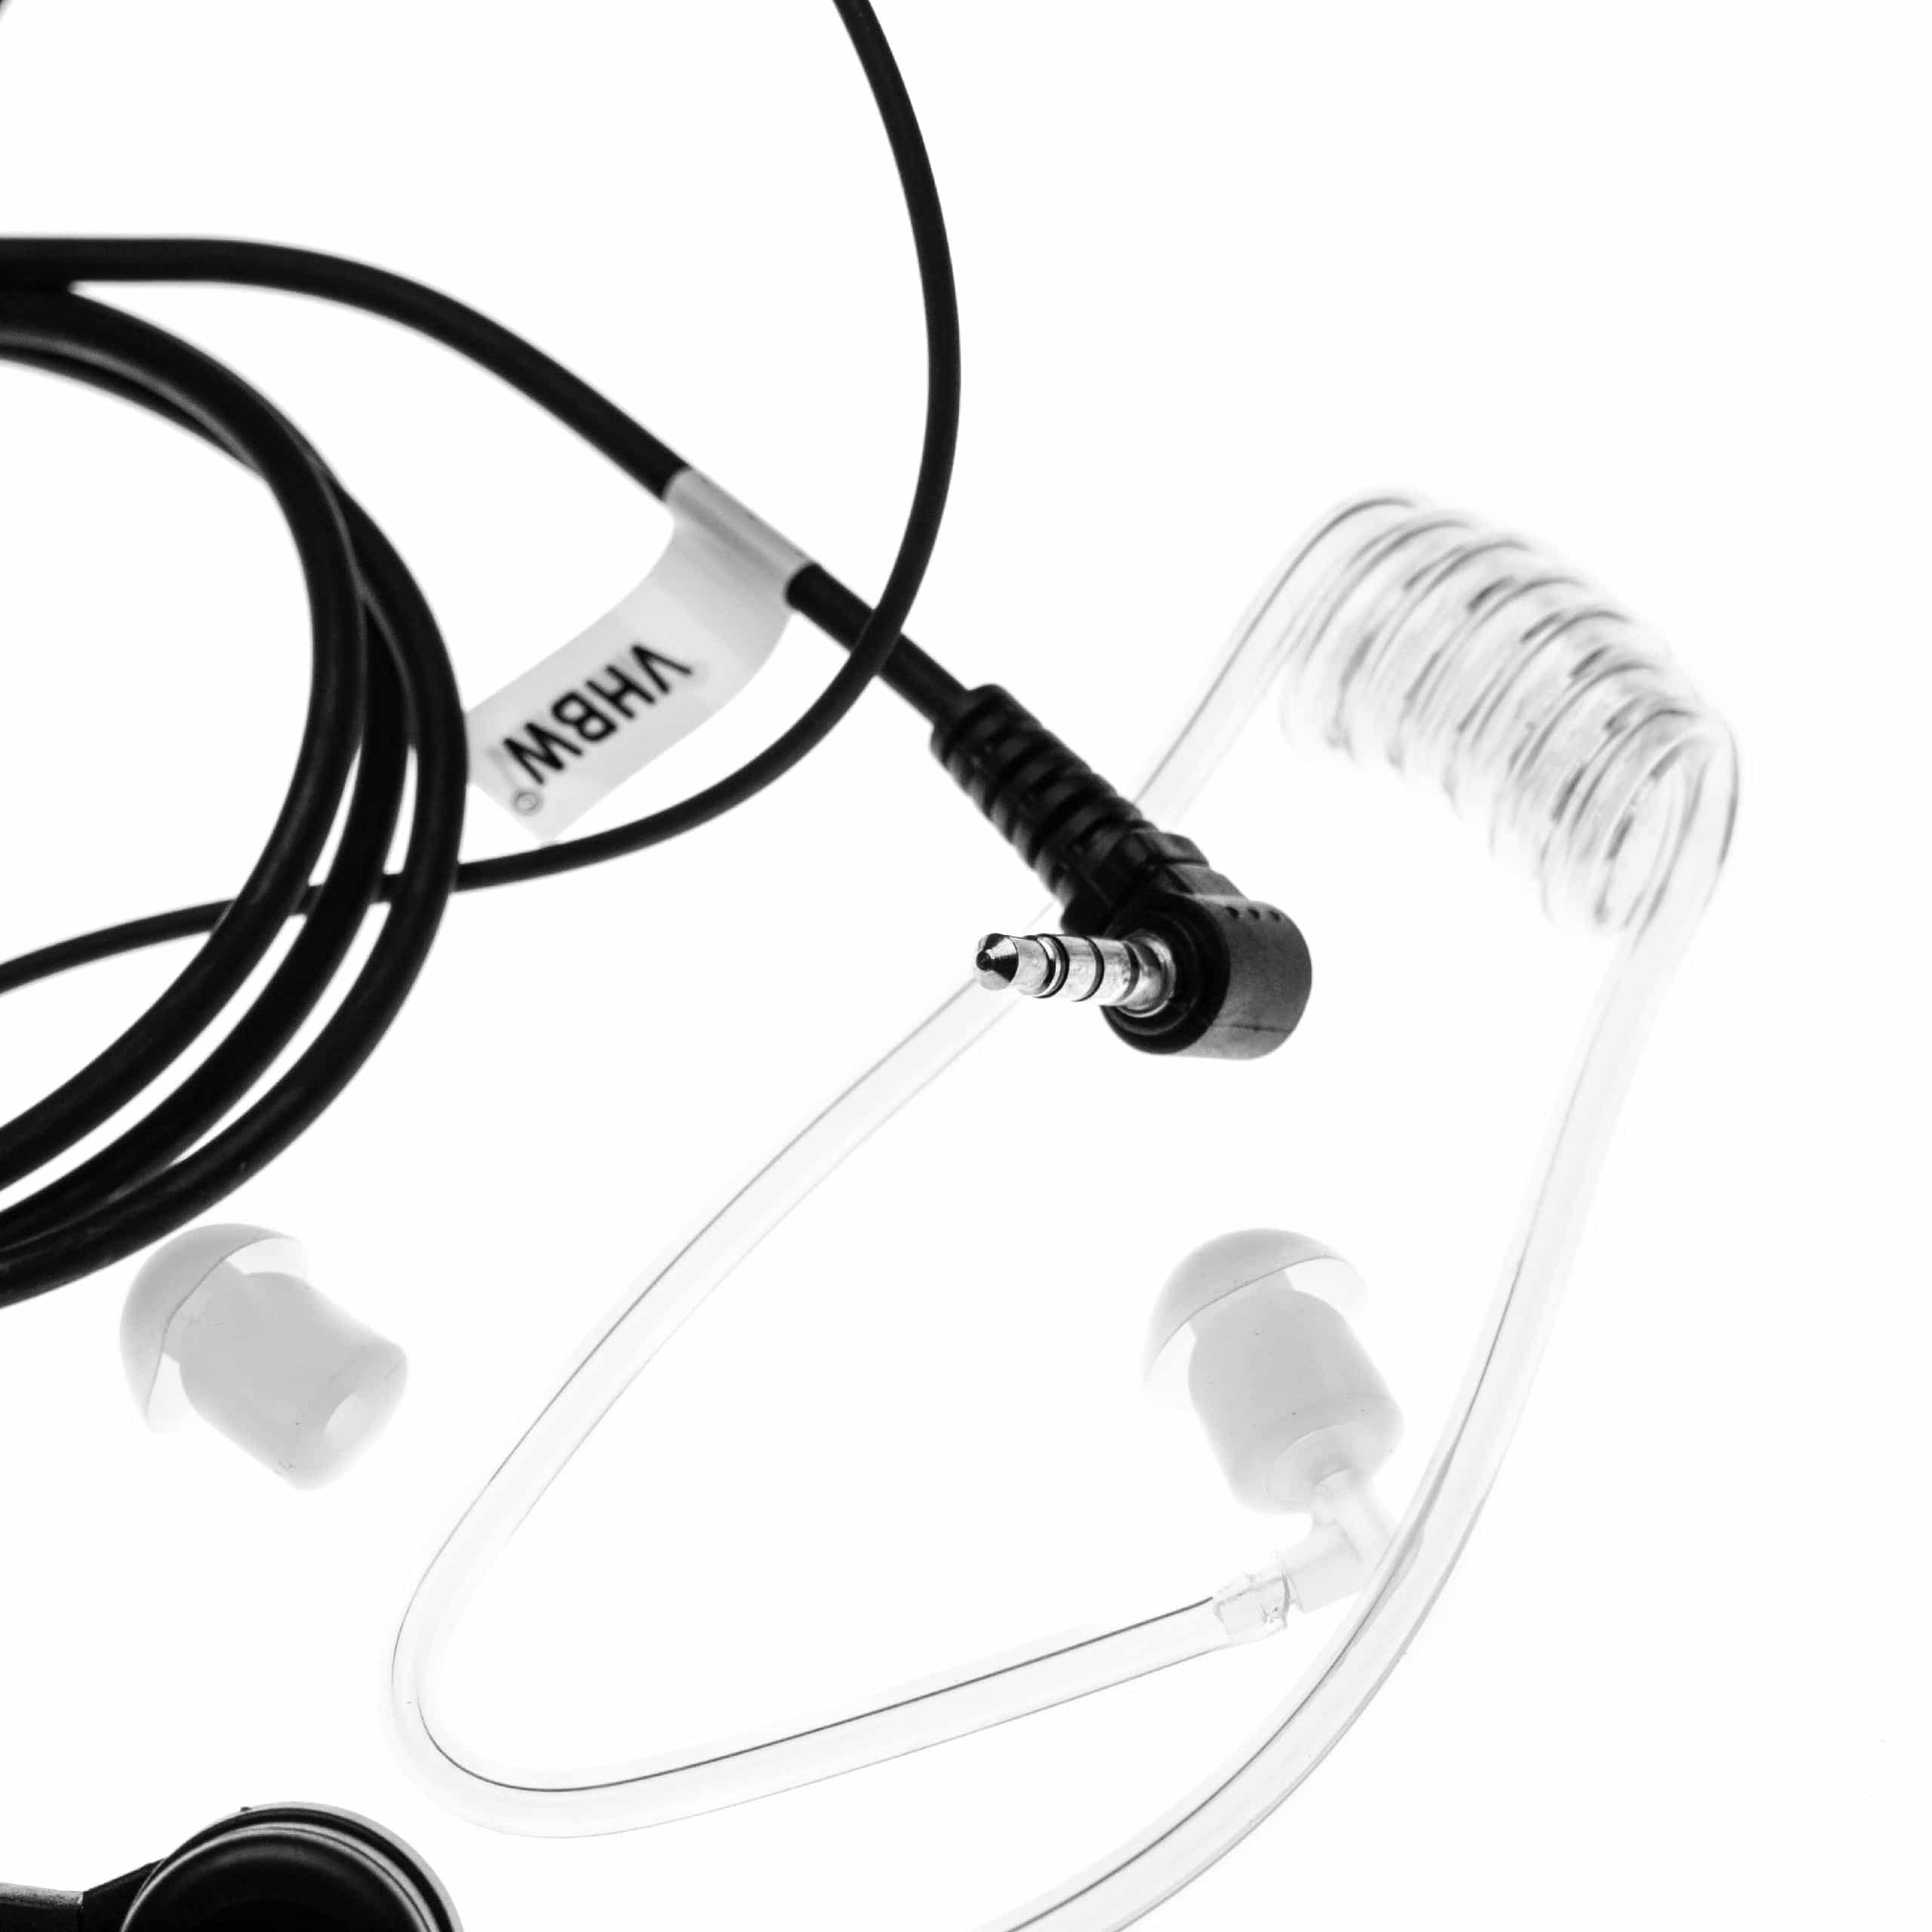 Security headset per ricetrasmittente Yaesu VX-2R - trasparente / nero + microfono push-to-talk + supporto a c